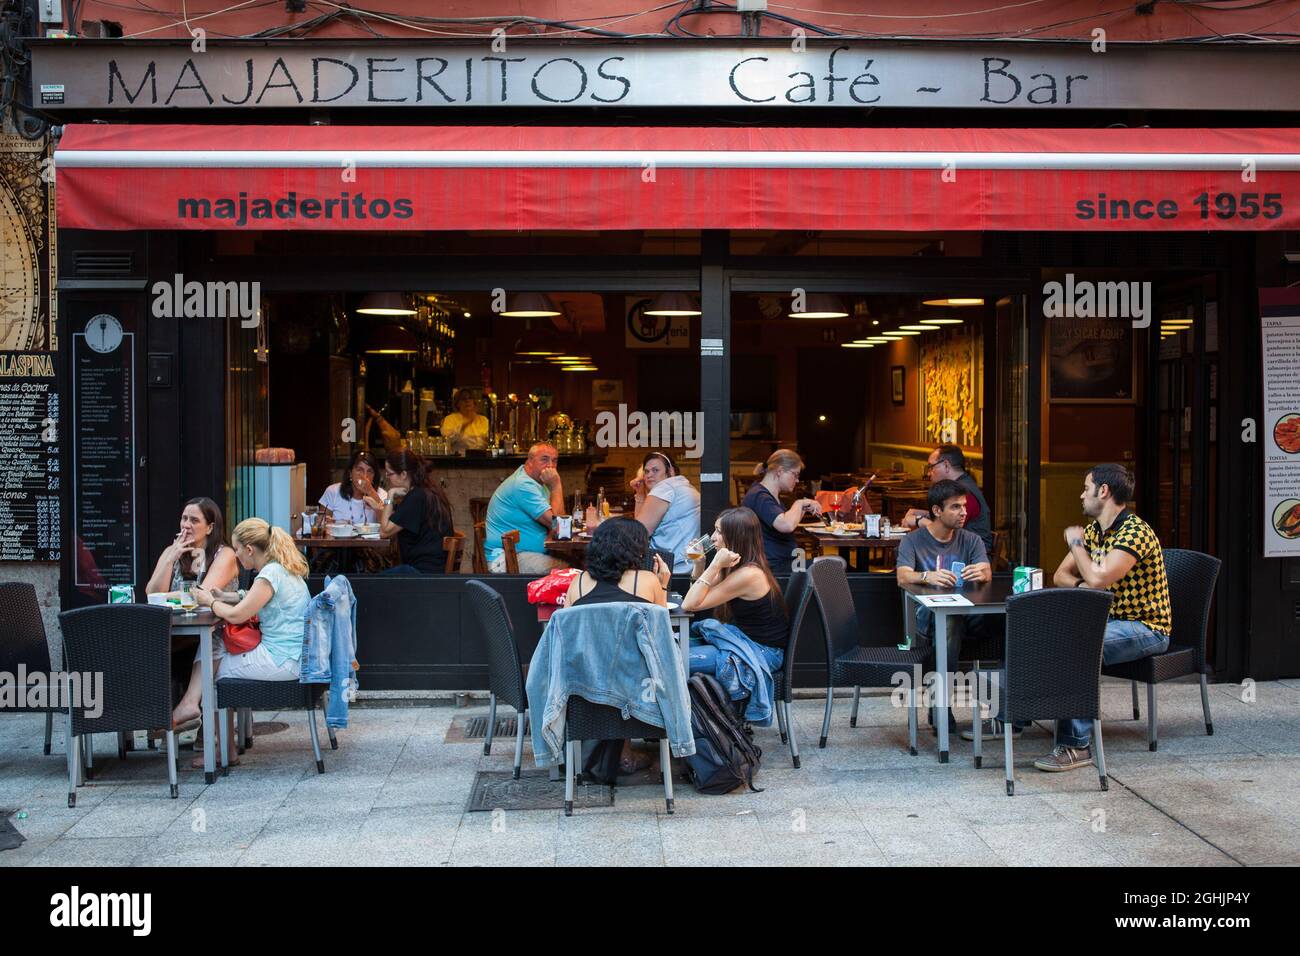 Majaderitos Cafe & Bar on Calle de Cadiz iin the Cortes district of Madrid Stock Photo